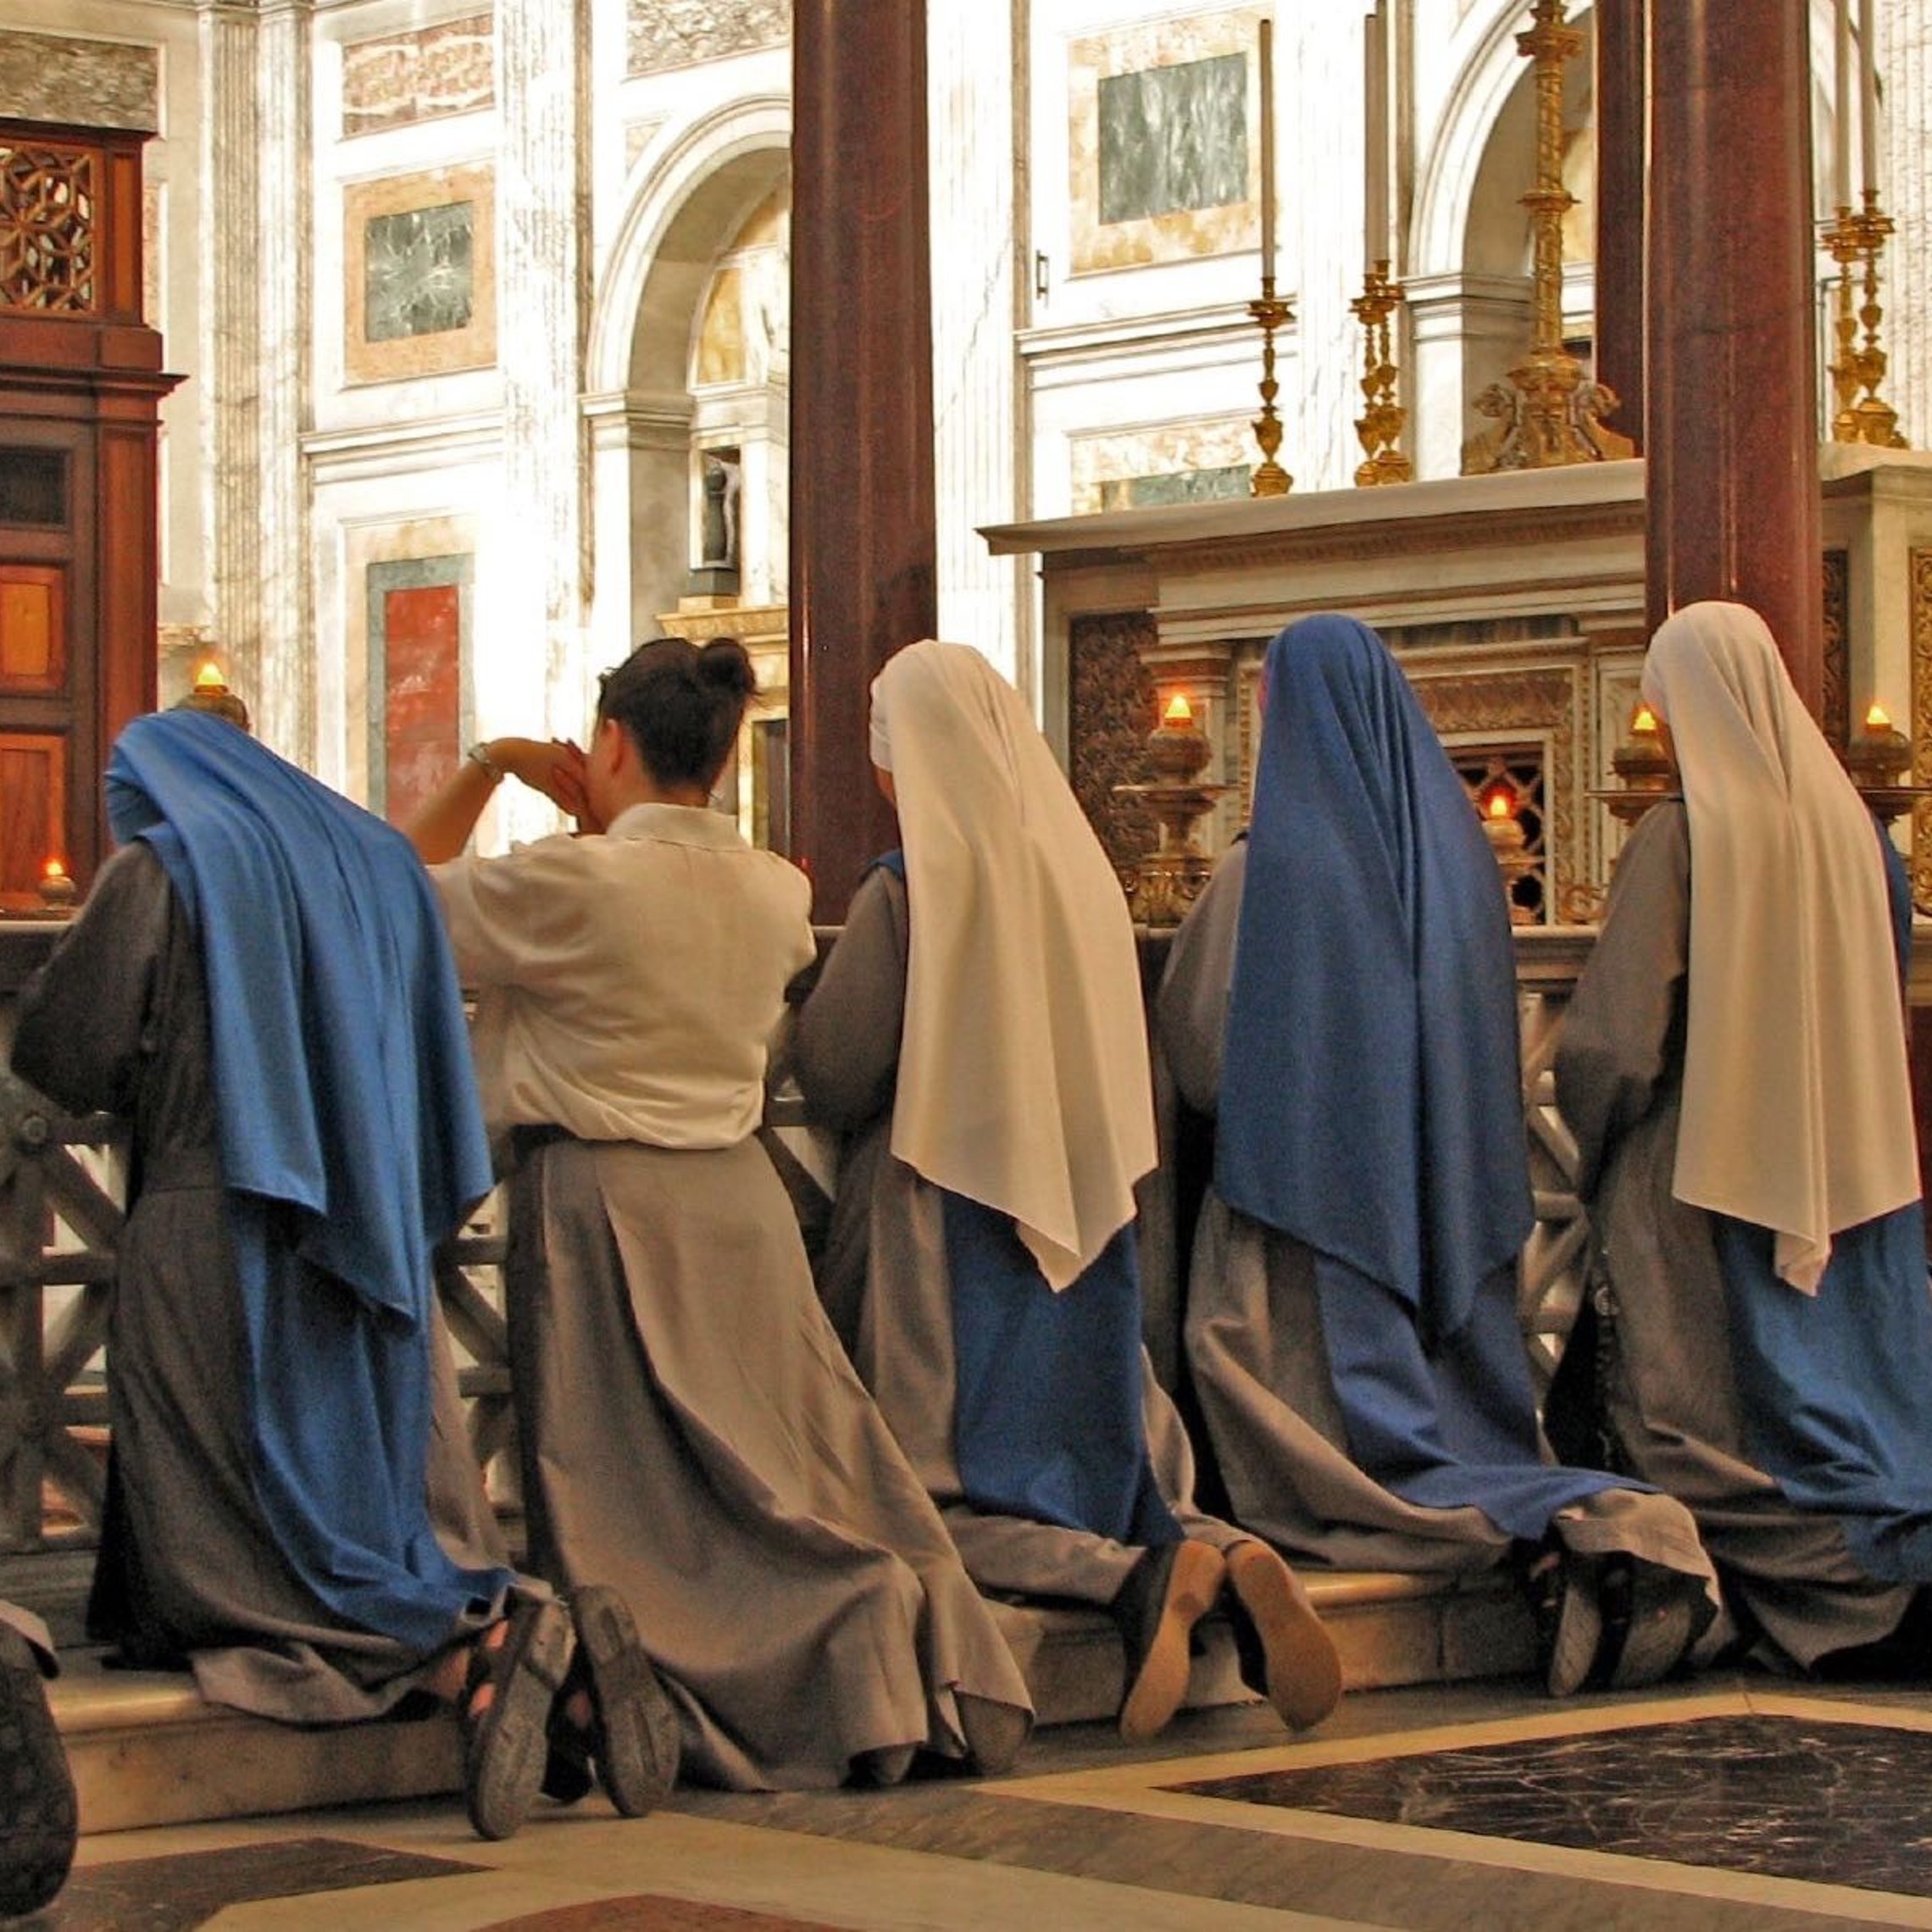 Sisters In Prayer At St Paul Ostw